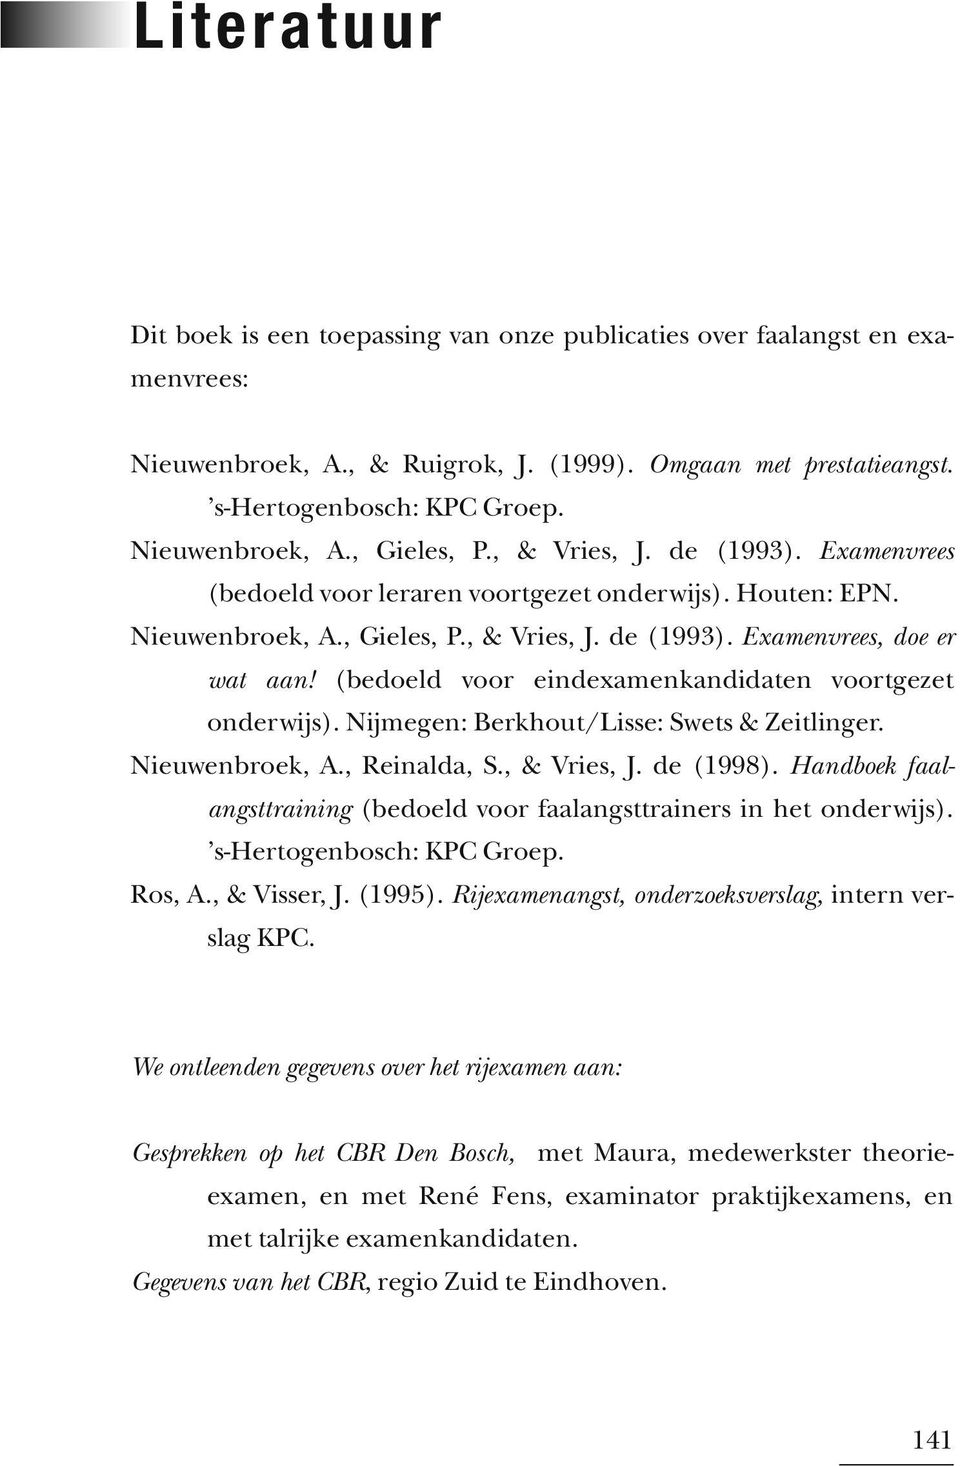 (bedoeld voor eindexamenkandidaten voortgezet onderwijs). Nijmegen: Berkhout/Lisse: Swets & Zeitlinger. Nieuwenbroek, A., Reinalda, S., & Vries, J. de (1998).